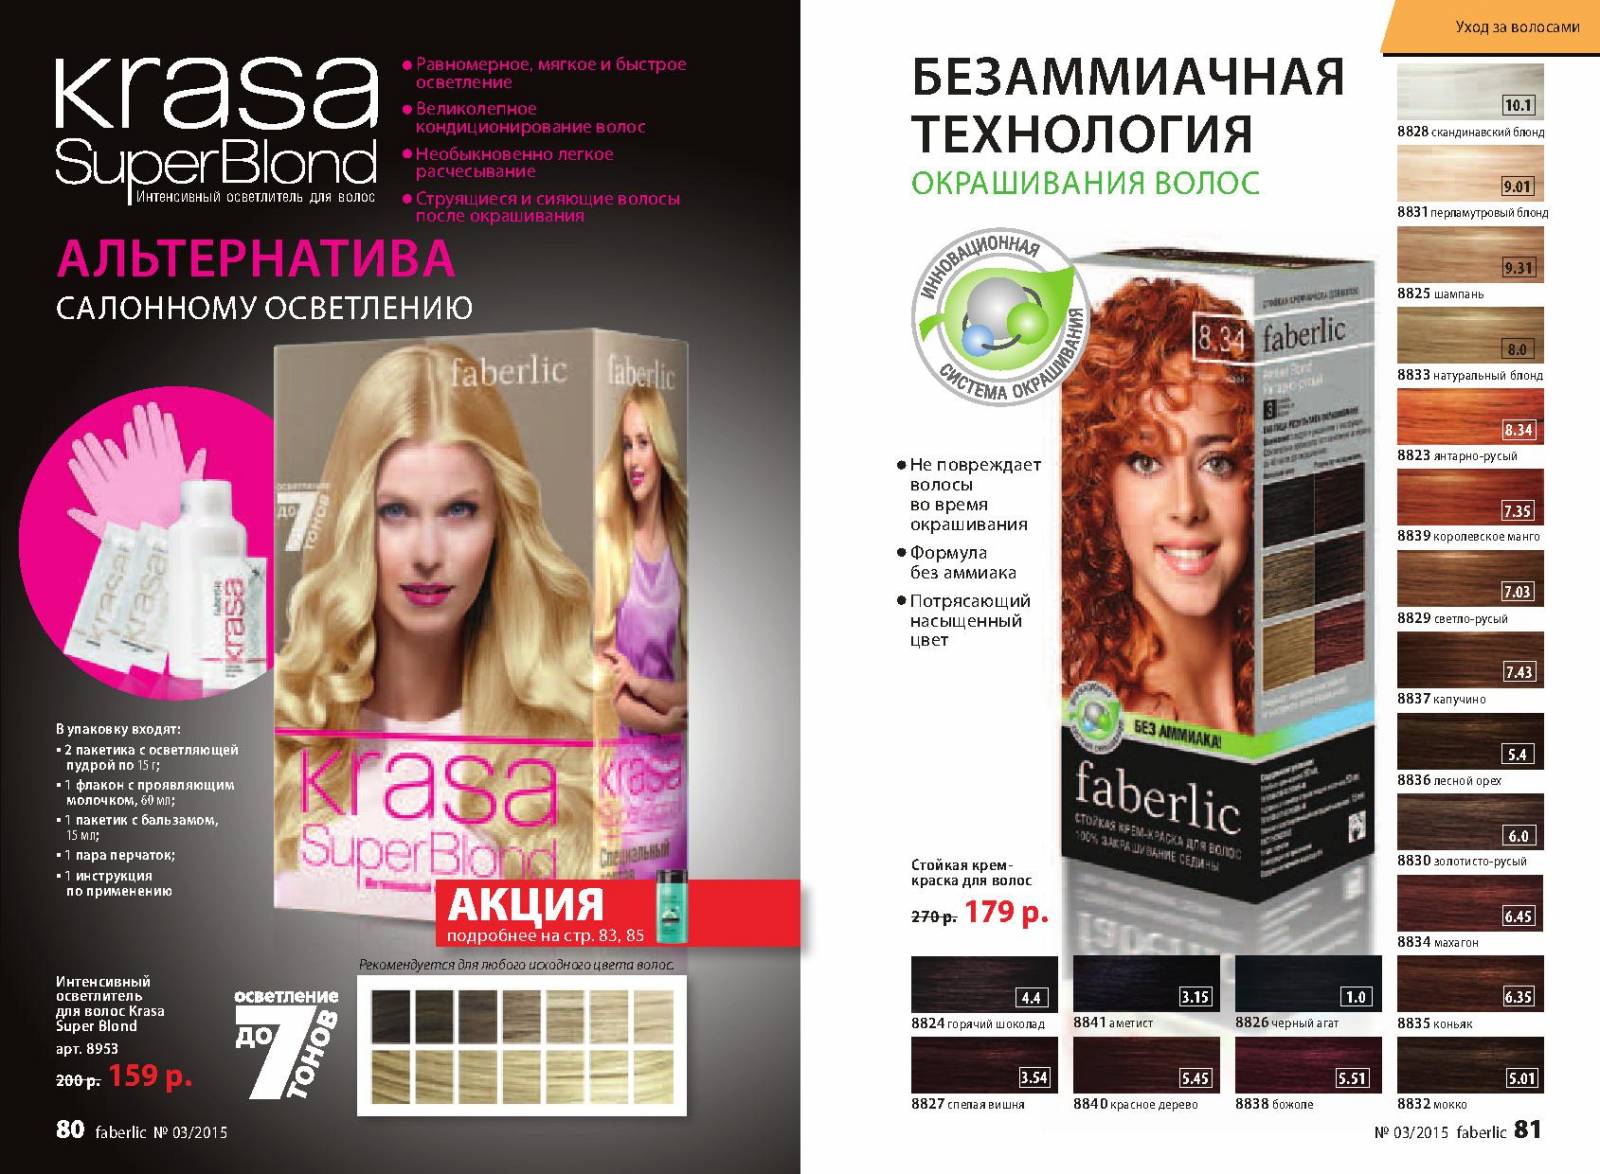 Краска для волос фаберлик в украине